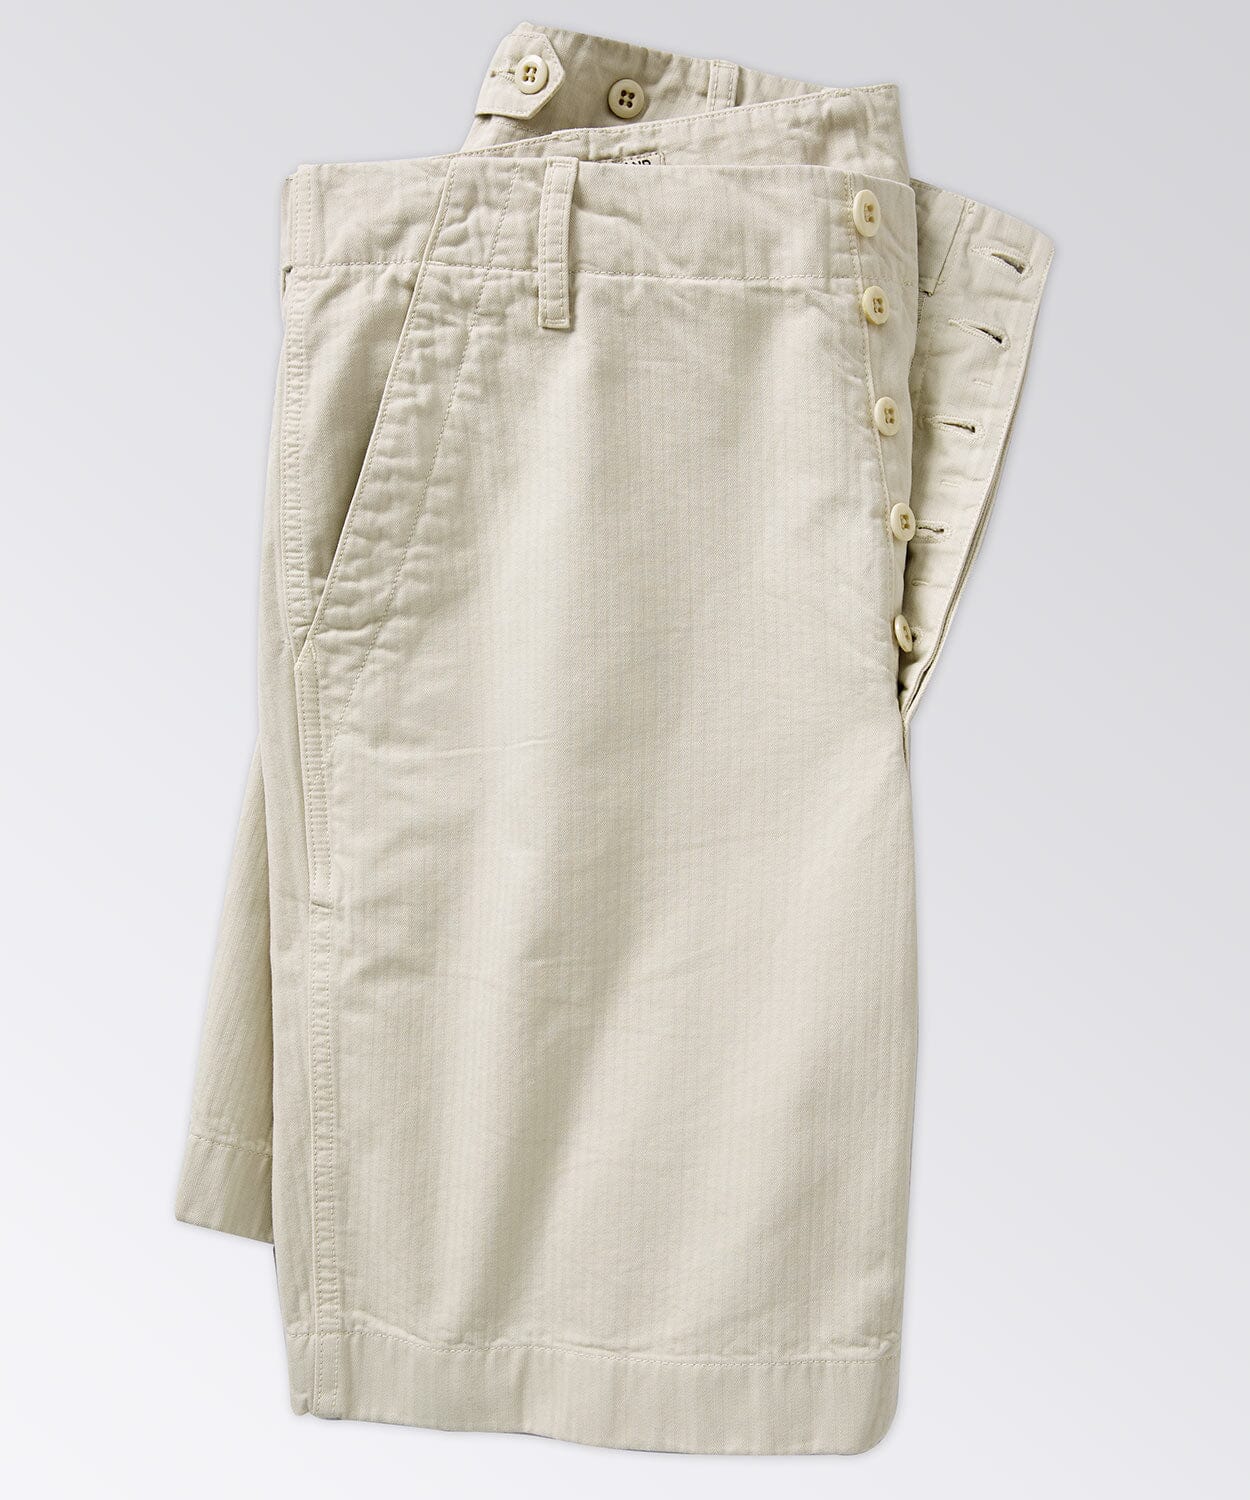 pocket of mens shorts